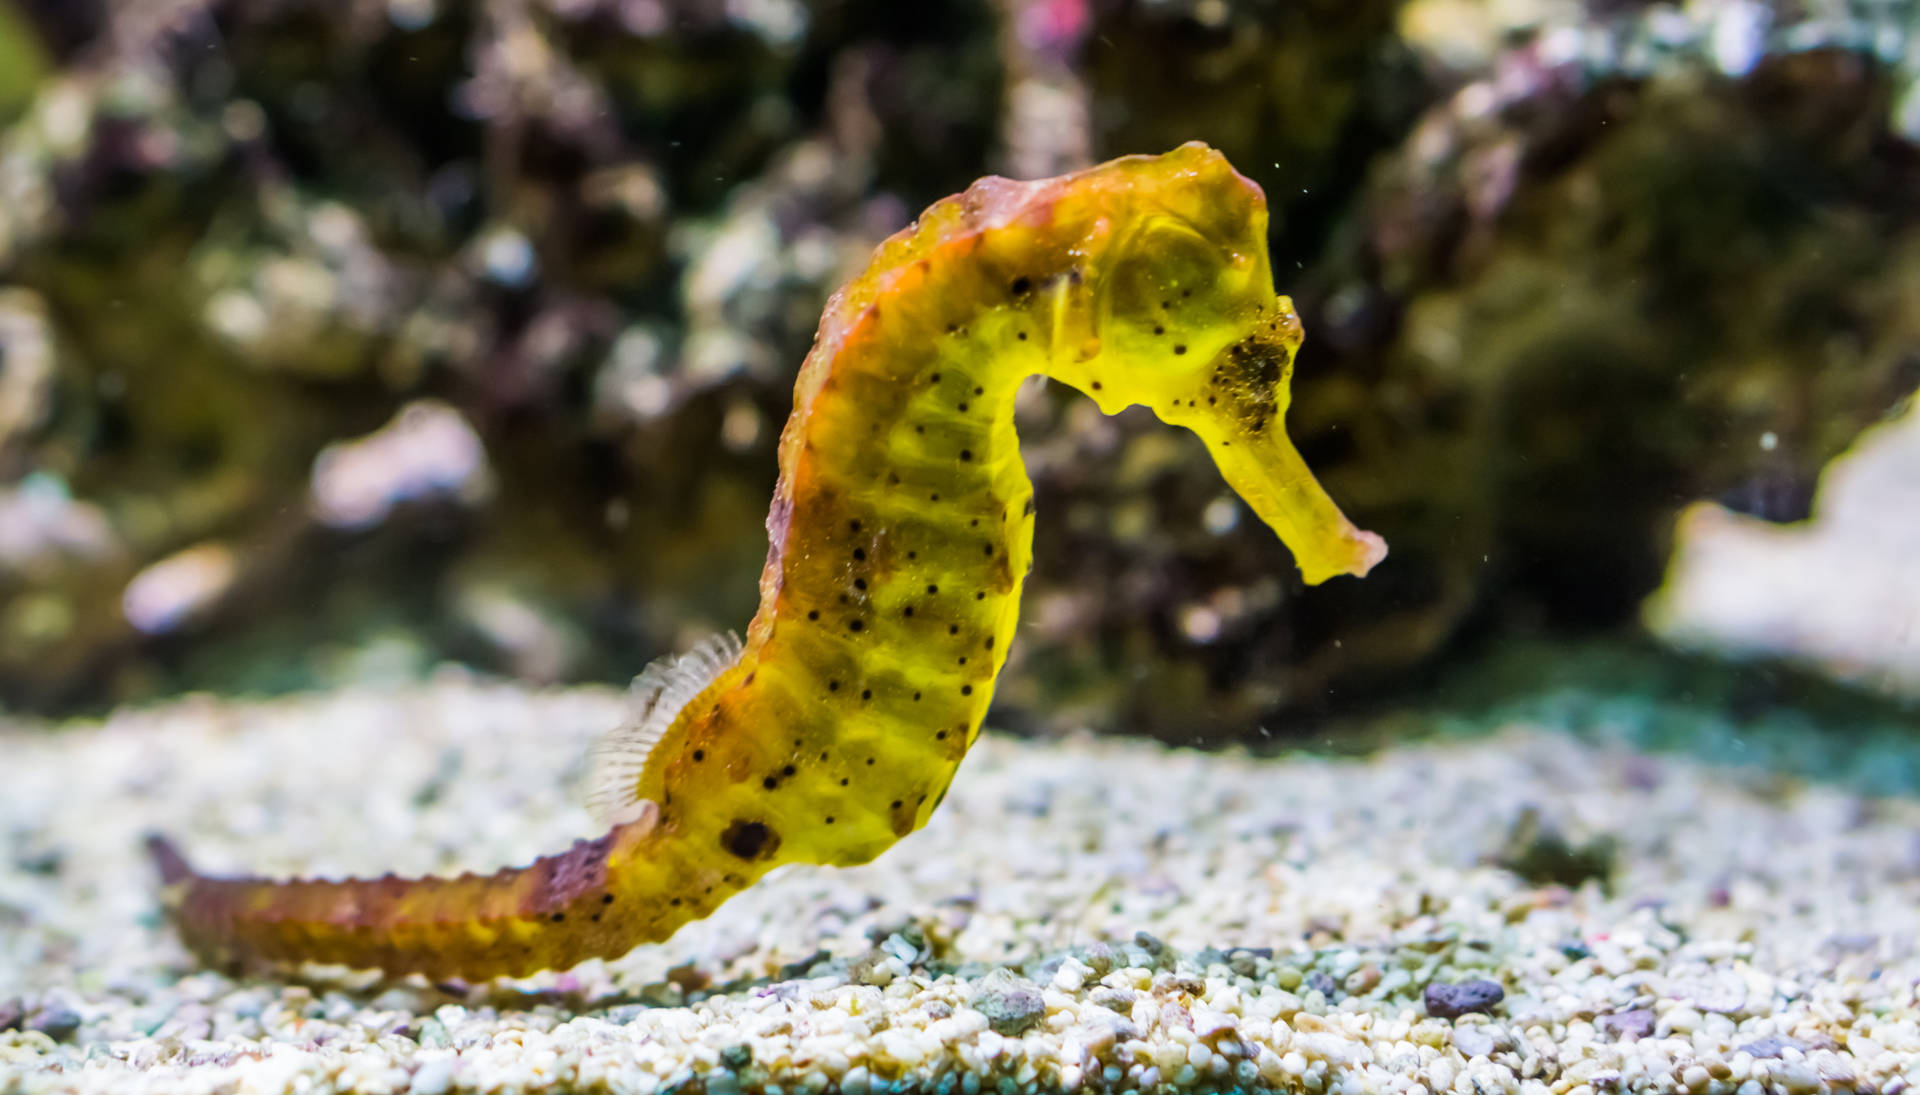 Striking Yellow Seahorse In Detail